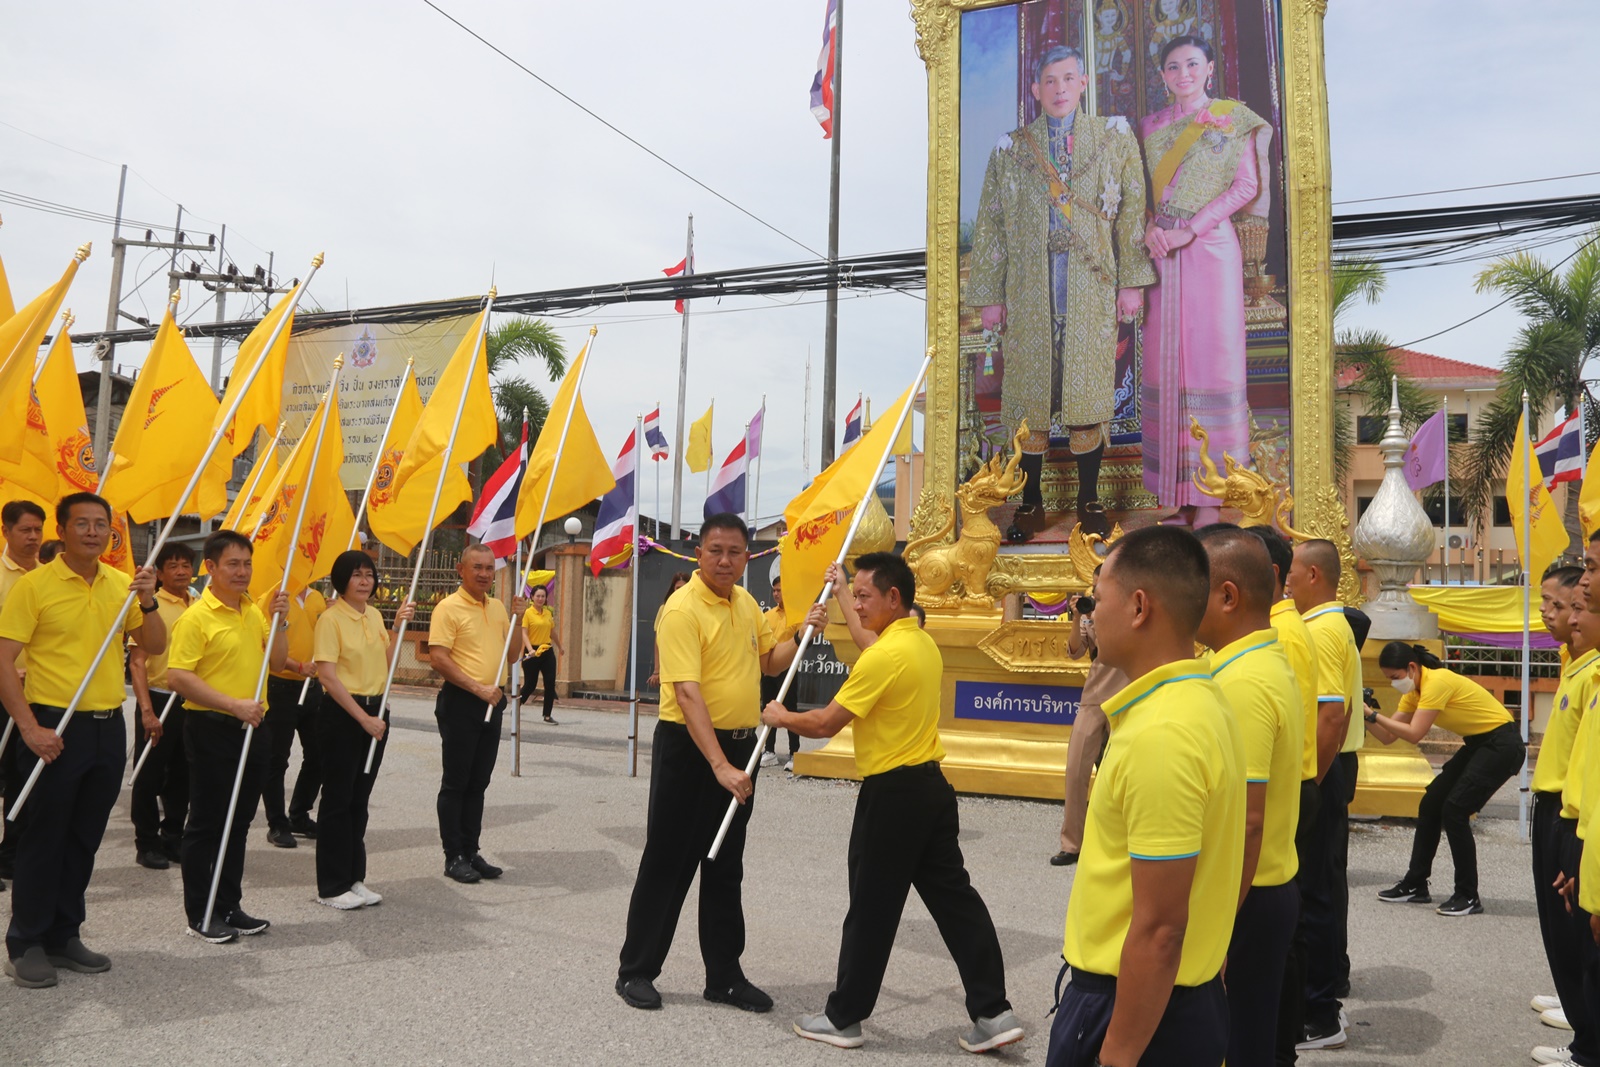 ชลบุรี-อำเภอสัตหีบ ร่วมกิจกรรม”เดิน วิ่ง ปั่น รับธงตราสัญลักษณ์”งานเฉลิมพระเกียรติฯ